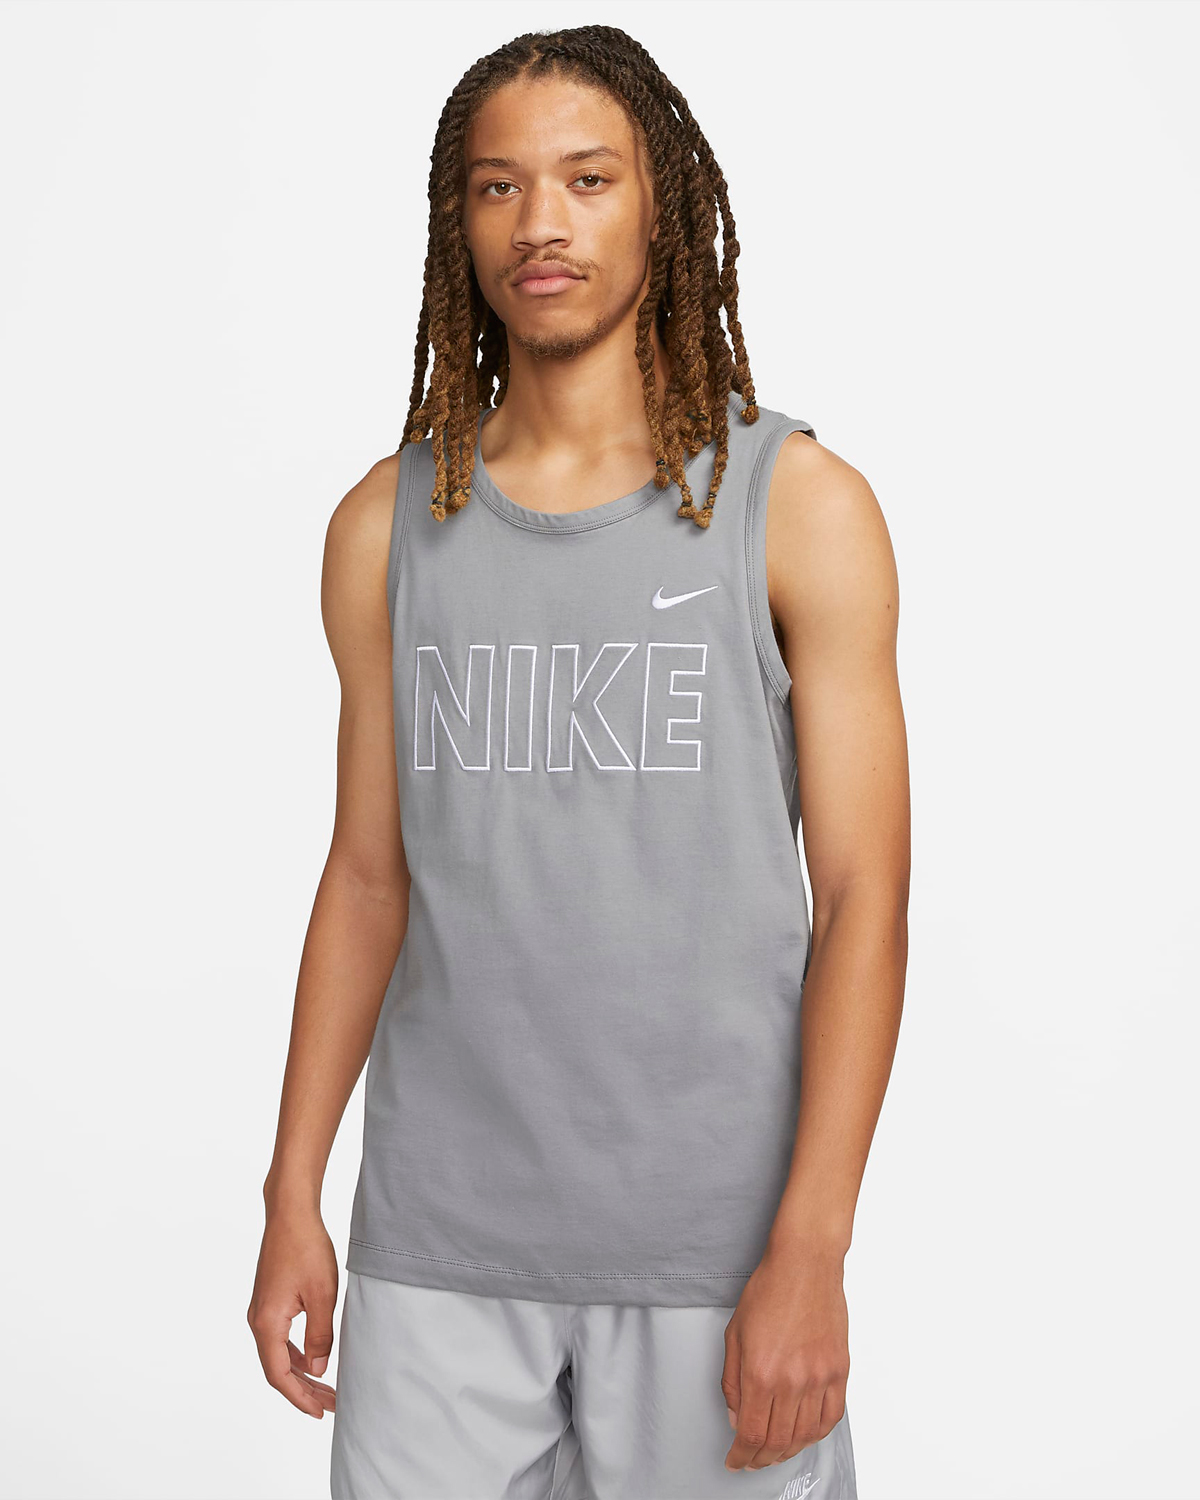 Nike-Sportswear-Graphic-Tank-Top-Cool-Grey